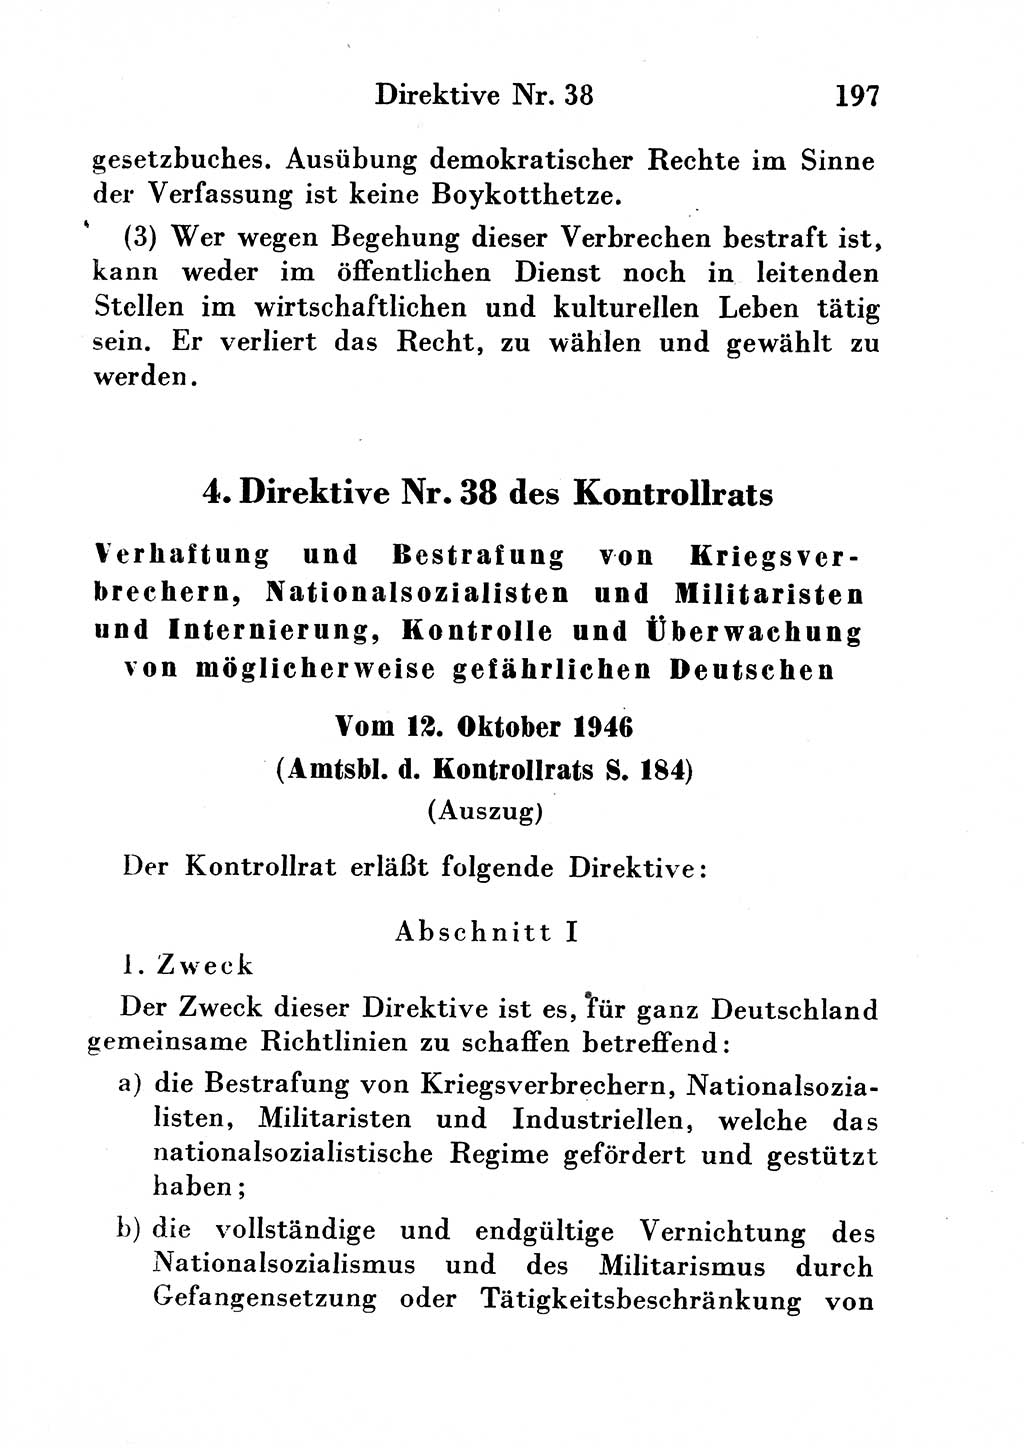 Strafgesetzbuch (StGB) und andere Strafgesetze [Deutsche Demokratische Republik (DDR)] 1954, Seite 197 (StGB Strafges. DDR 1954, S. 197)